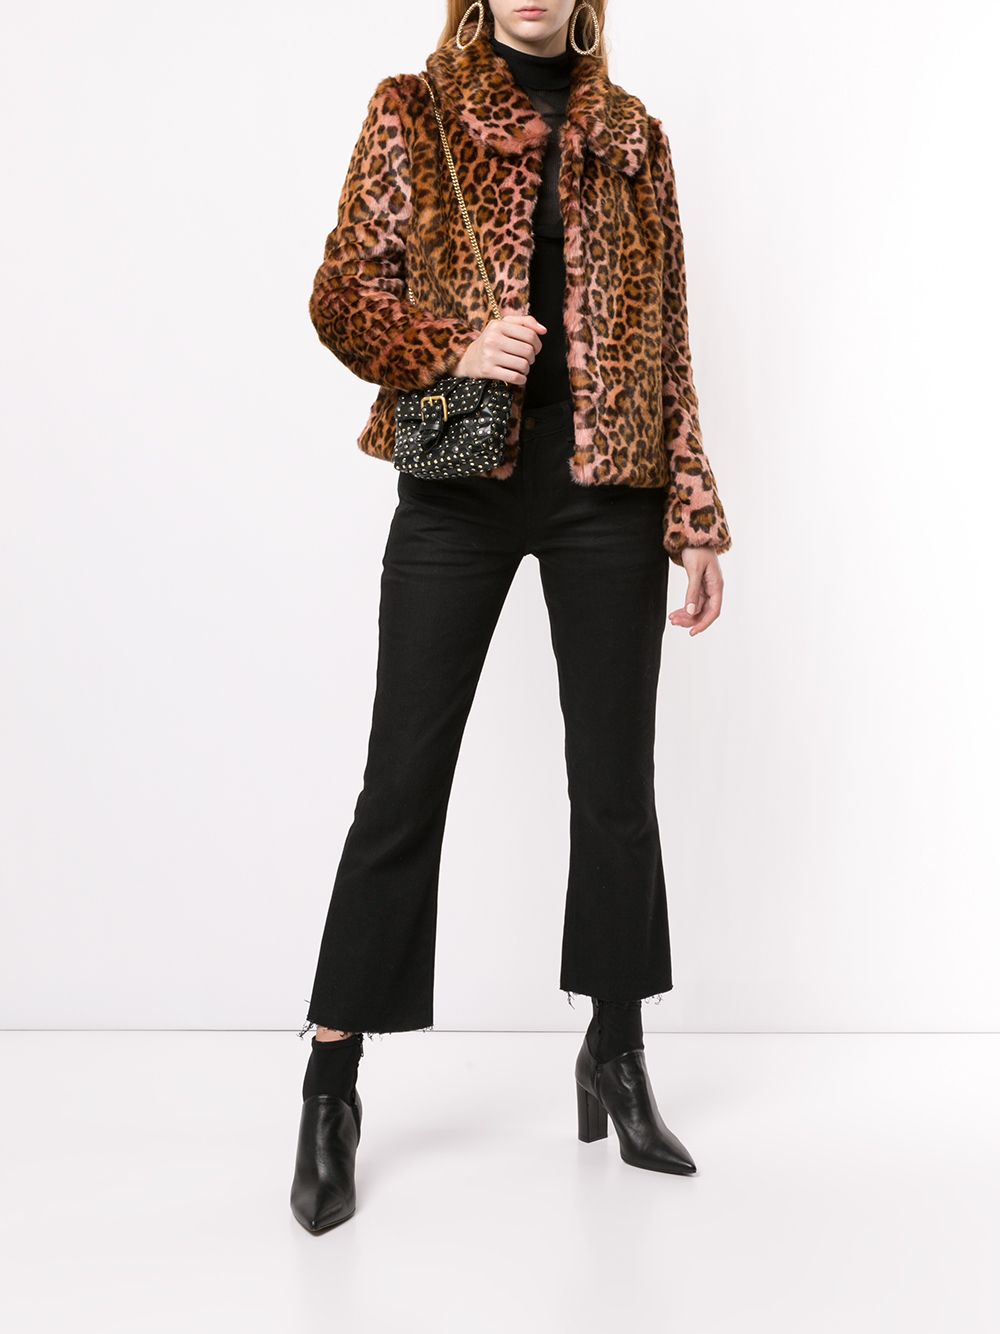 фото Unreal Fur фактурное пальто с леопардовым принтом